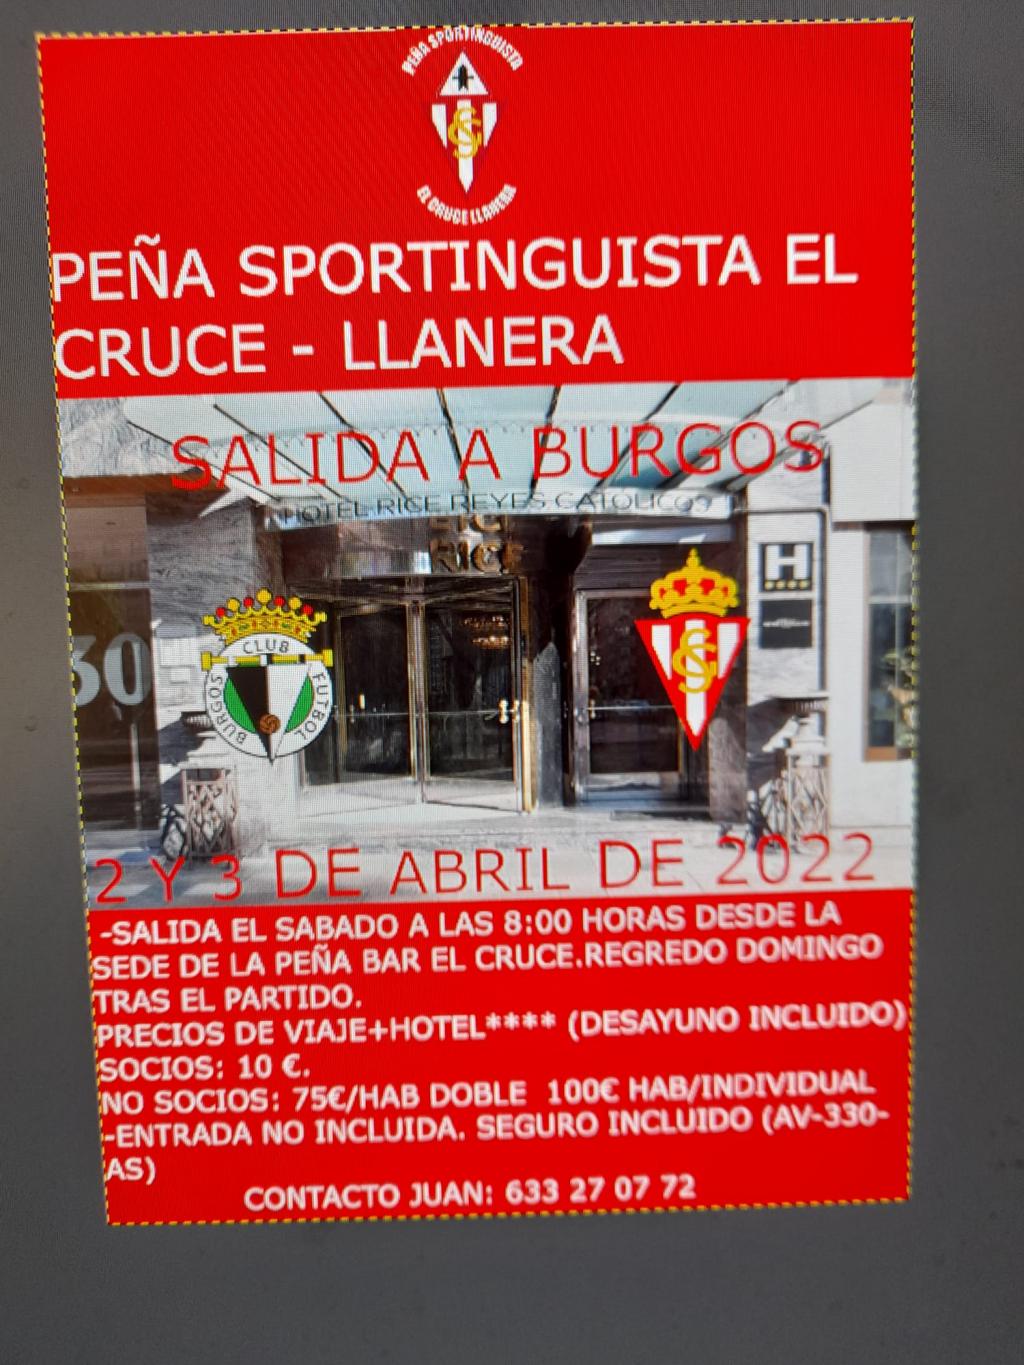 El Tapin - La Peña Sportinguista El Cruce organiza una salida a Burgos el 2 y 3 de abril